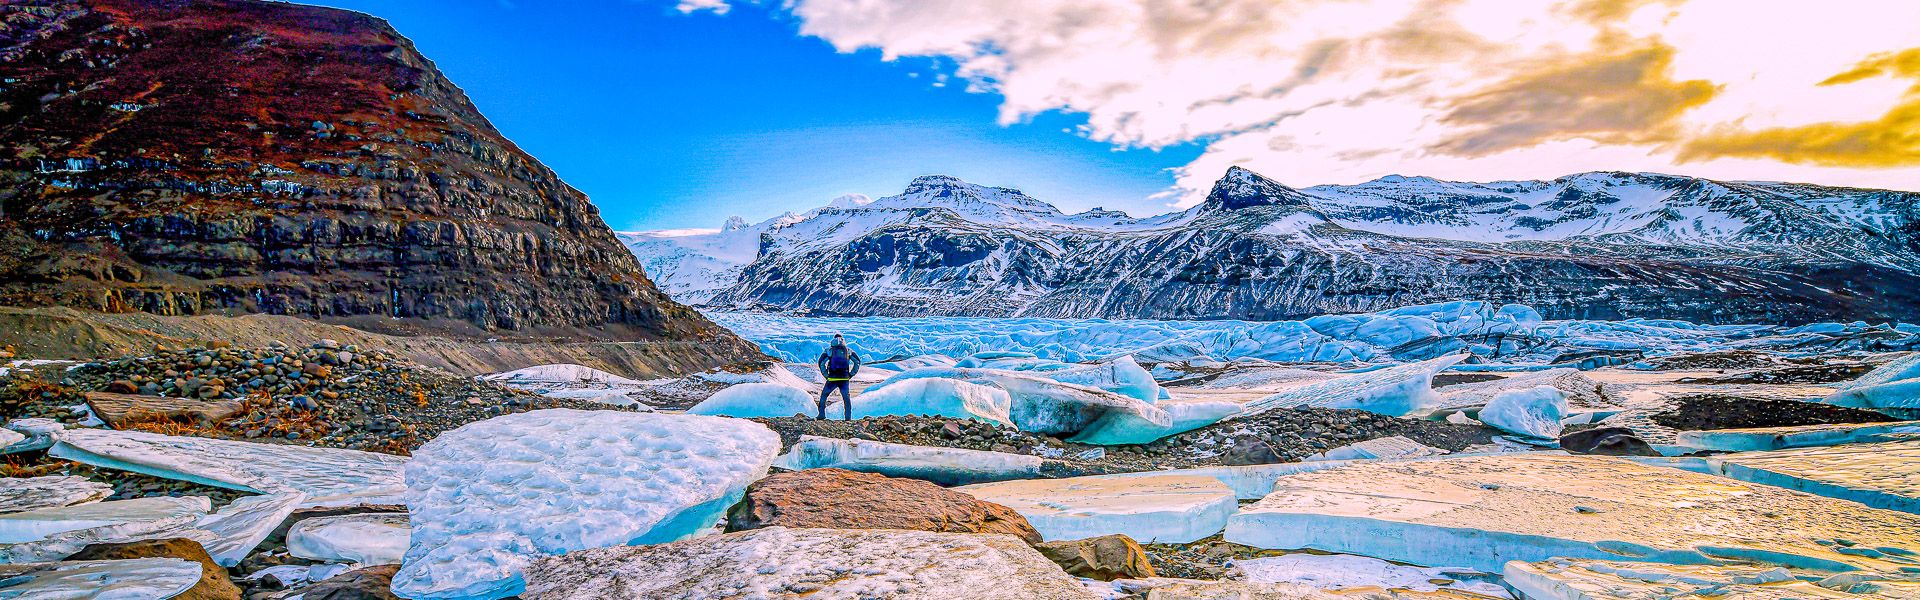 Die Ruhe am Gletscher |  Robert Juvet / Chamleon